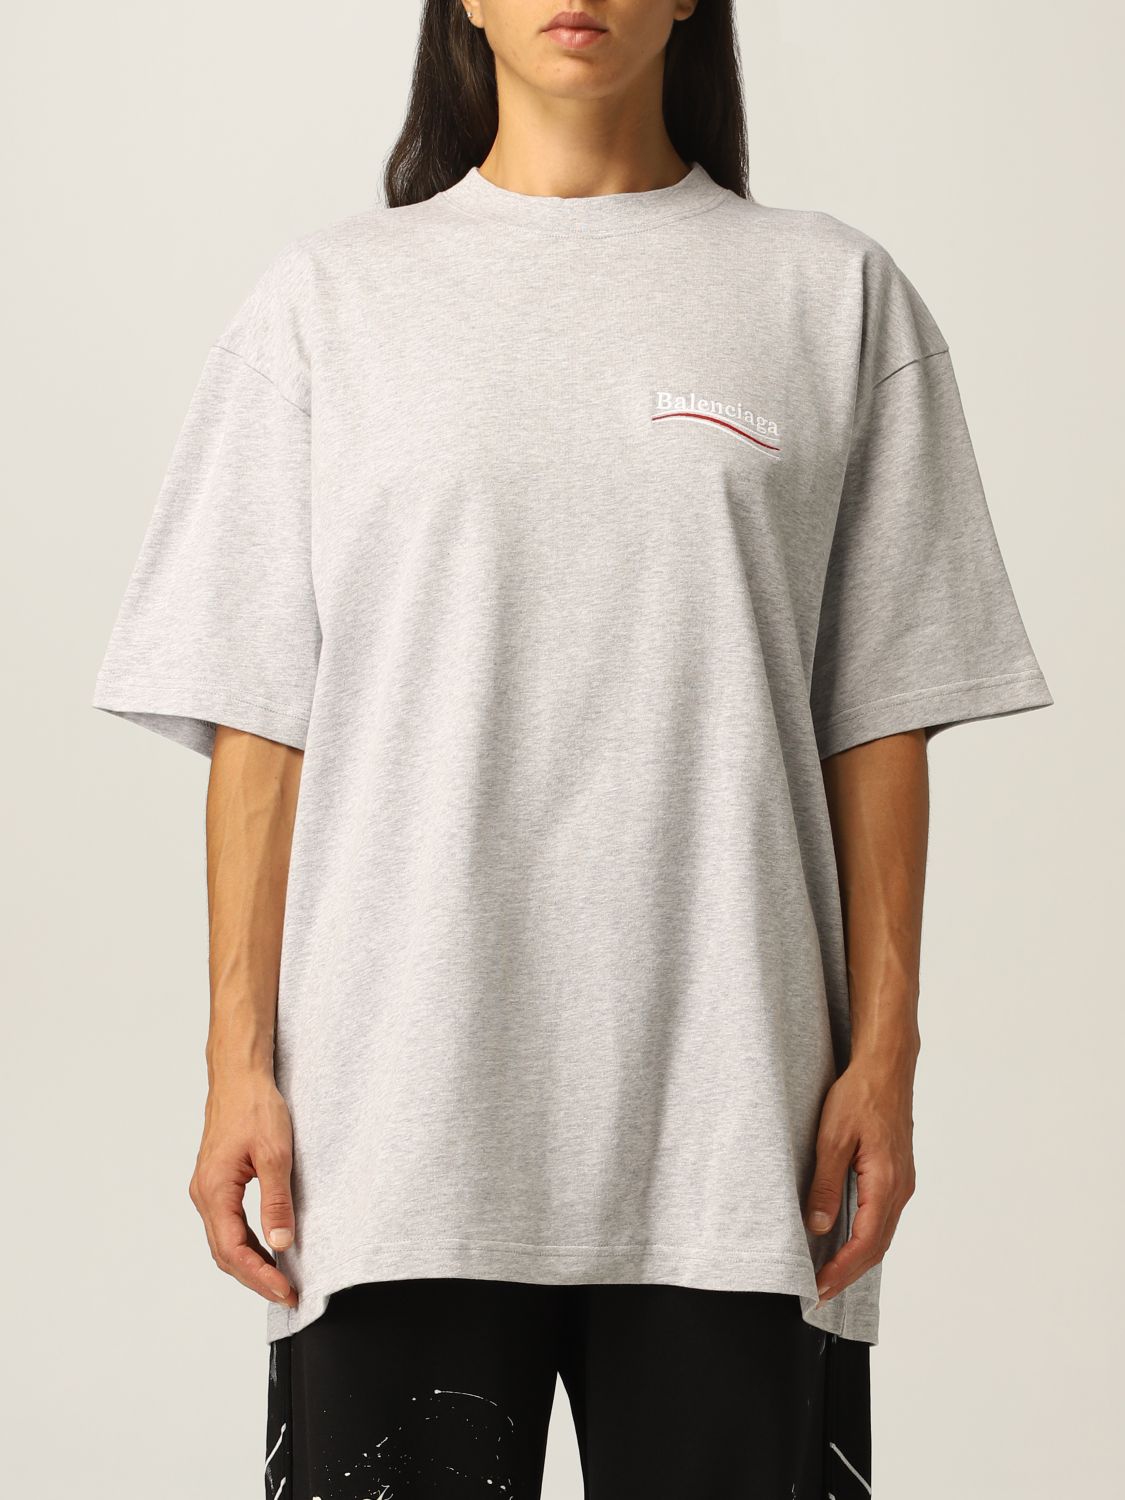 BALENCIAGA: cotton t-shirt with logo | T-Shirt Balenciaga Women Grey ...